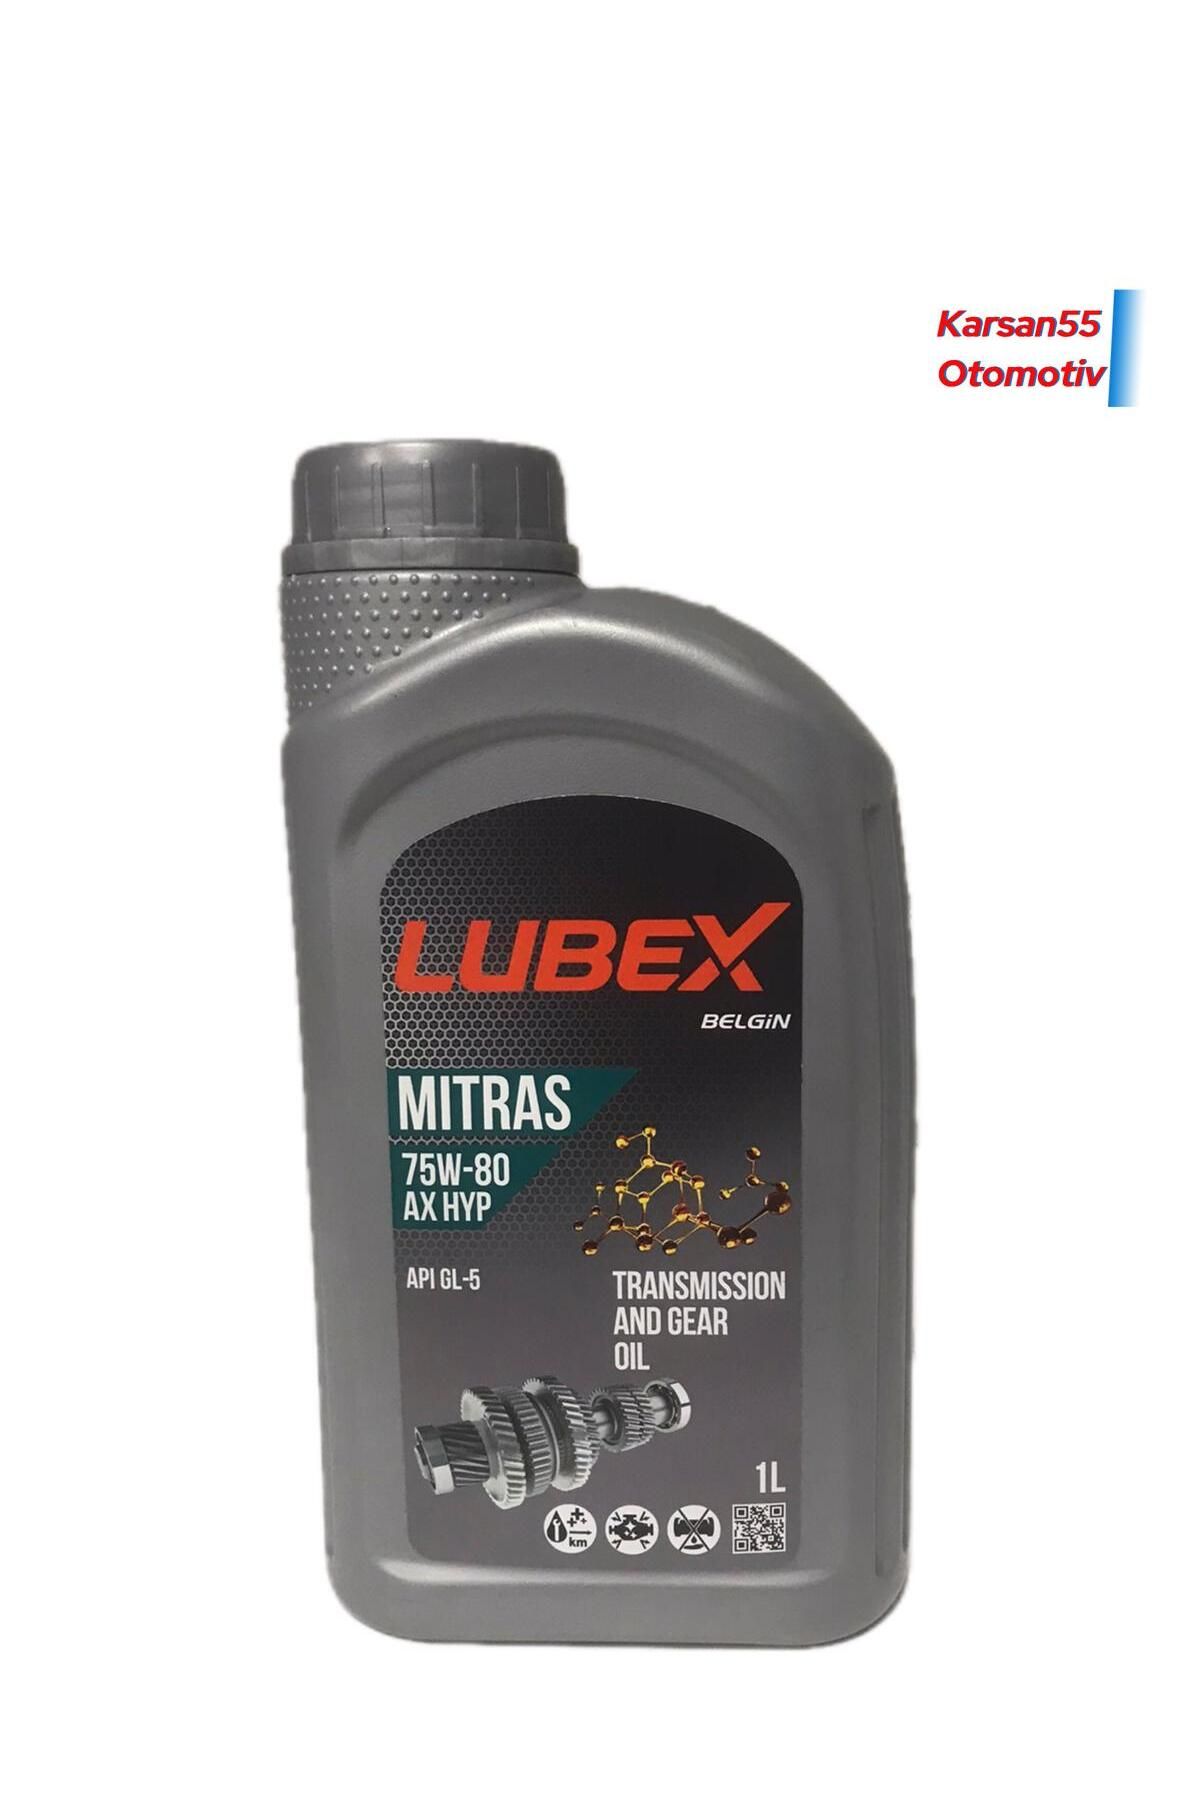 Lubex Mitras AX HYP 75W80 1 Lt Şanzıman Yağı üretim 2022